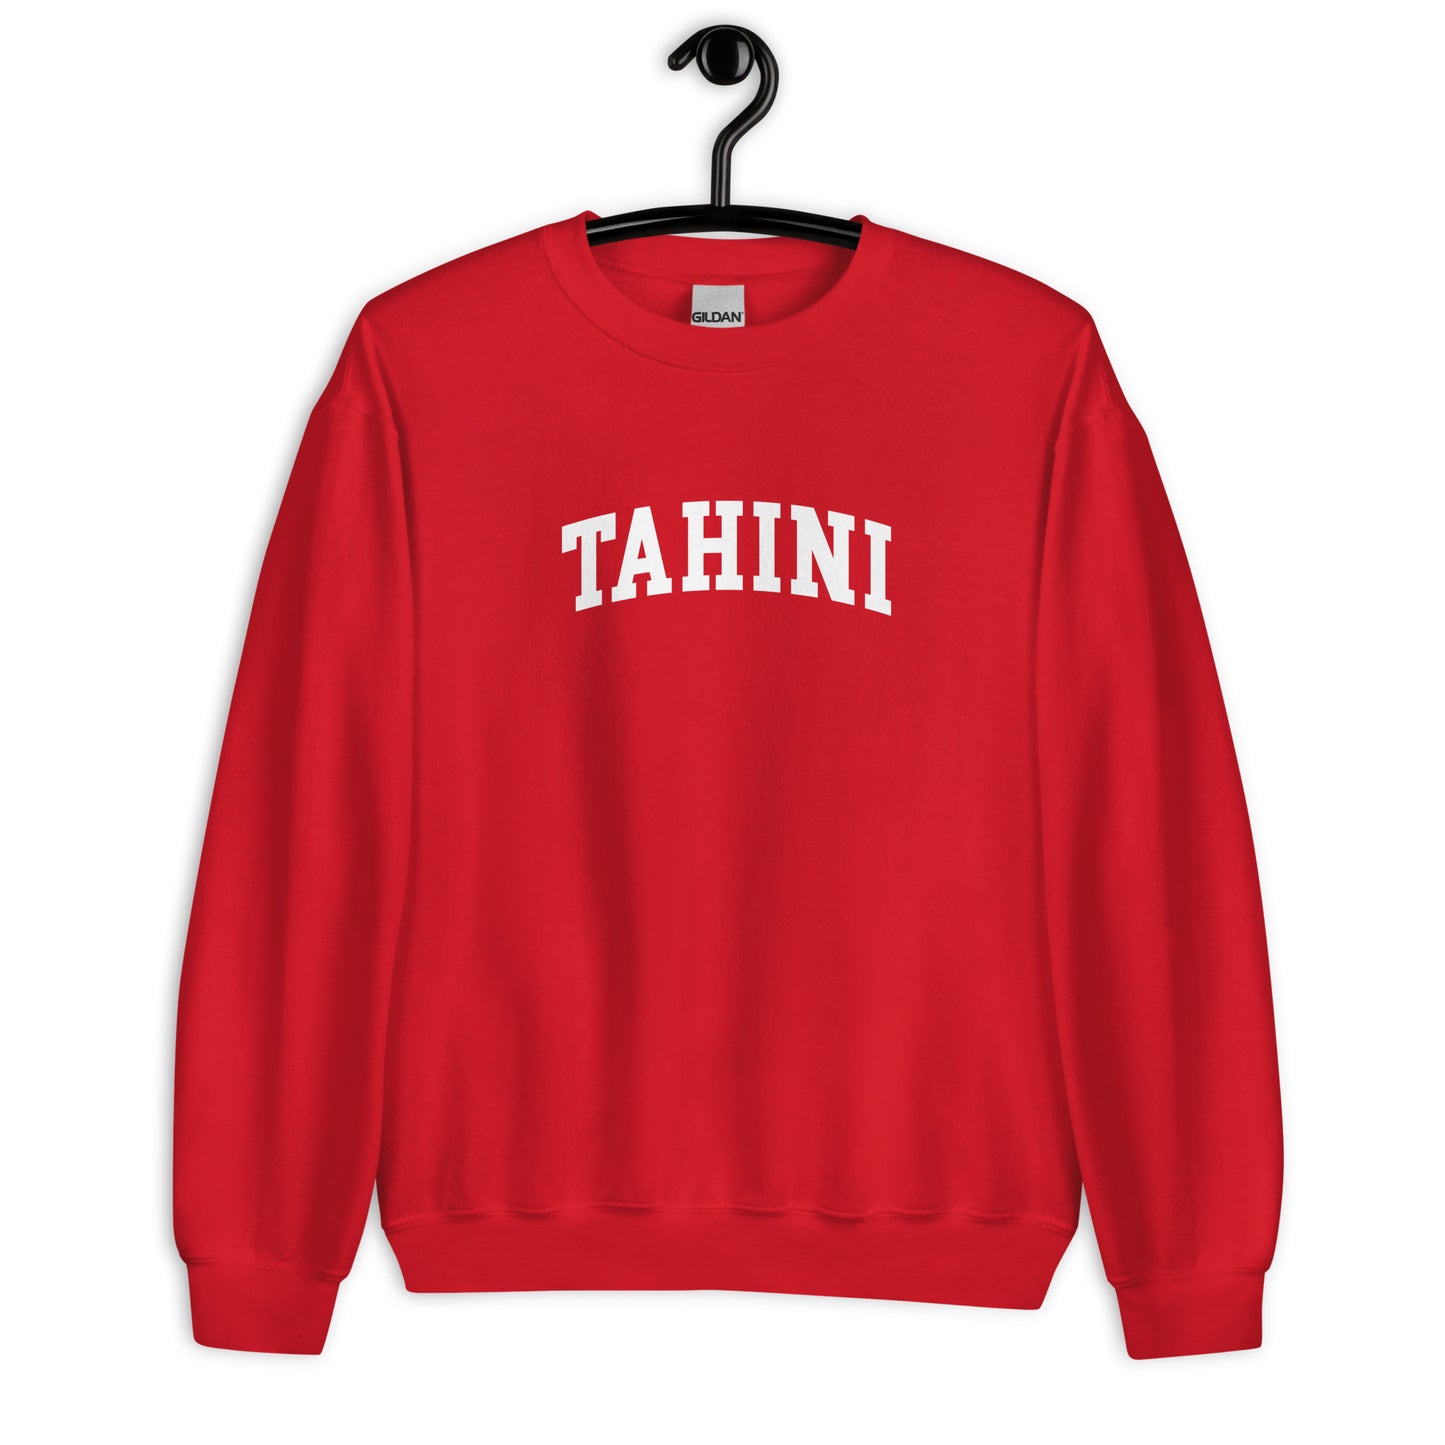 Tahini Sweatshirt - Arched Font